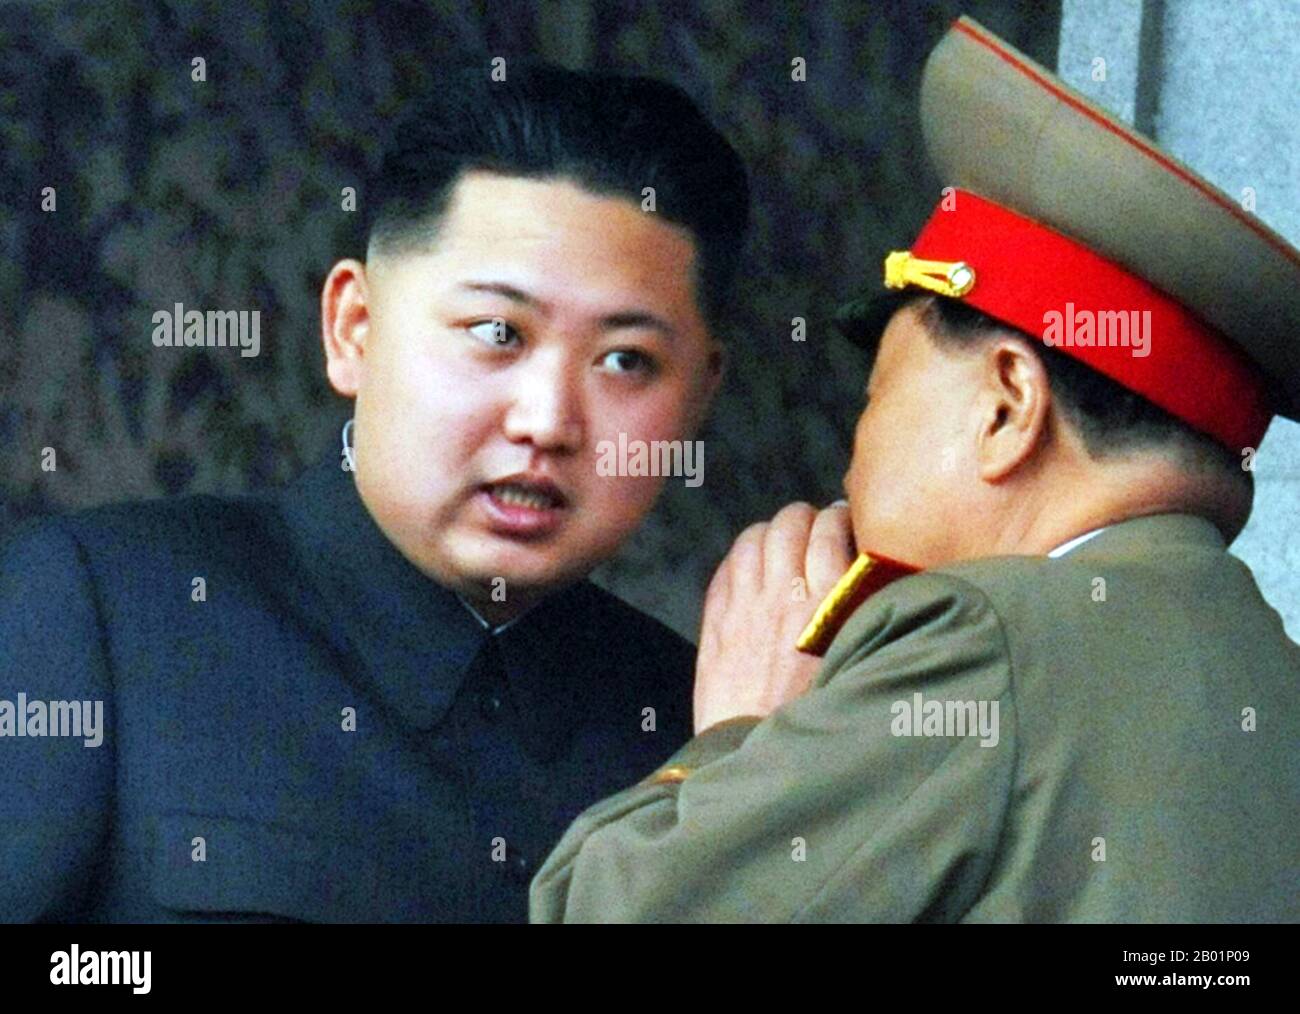 Korea: Kim Jong-un (* 8. Januar 1983/1984), Oberster Führer Nordkoreas, im Gespräch mit dem General der DVRK. Jong-un, auch bekannt als Kim Jong-eun oder Kim Jung-eun, ist seit dem 28. Dezember 2011 der oberste Führer Nordkoreas. Nach der Beerdigung seines Vaters, Kim Jong-il, wurde er offiziell zum obersten Führer erklärt. Er ist der dritte und jüngste Sohn von Kim Jong-il und seiner Gemahlin Ko Young-hee. Ab Ende 2010 galt Kim Jong-un als Erbe der Führung der Nation, und nach dem Tod seines Vaters wurde er als „großer Nachfolger“ angekündigt. Stockfoto